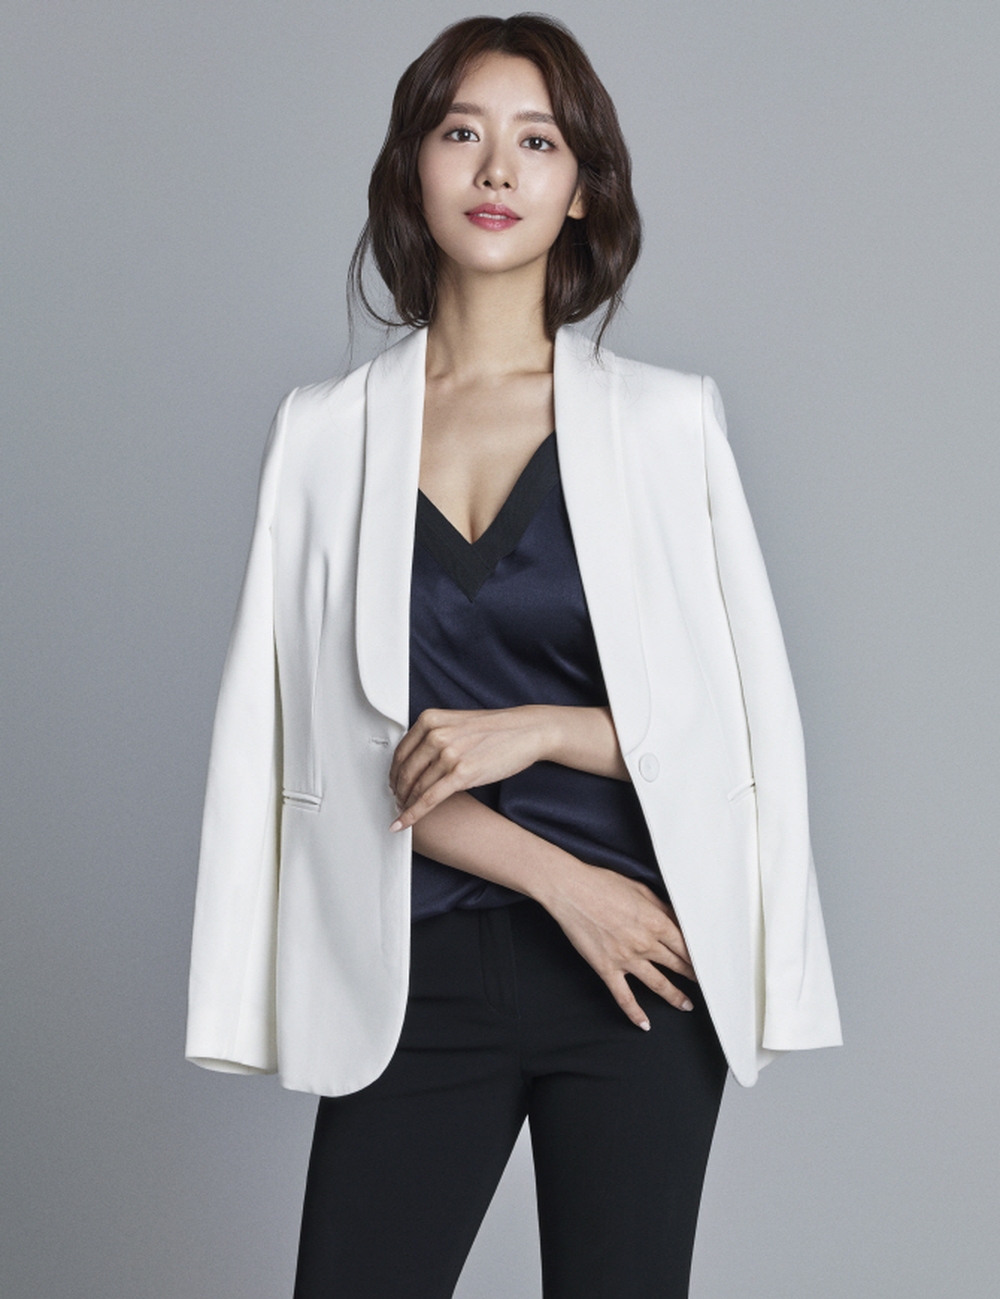  Ác nữ ngực khủng bắt nạt Song Hye Kyo: Đóa hoa nở muộn nóng bỏng, còn tốt nghiệp trường đại học danh tiếng thế giới - Ảnh 4.